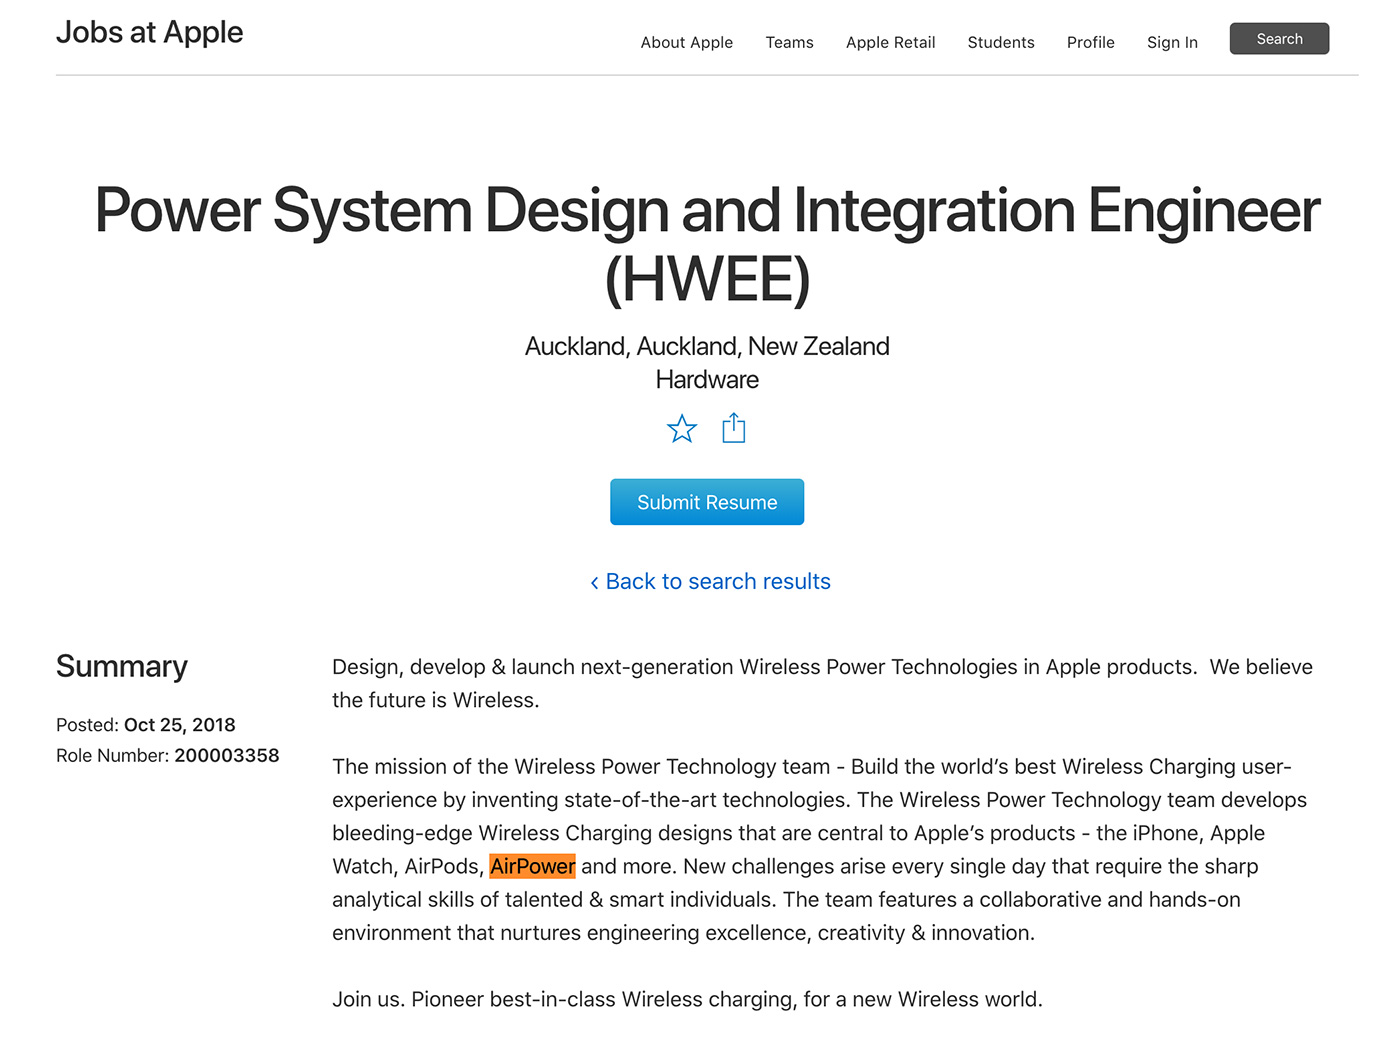 Oferta de trabajo de Apple que menciona la base de carga AirPower